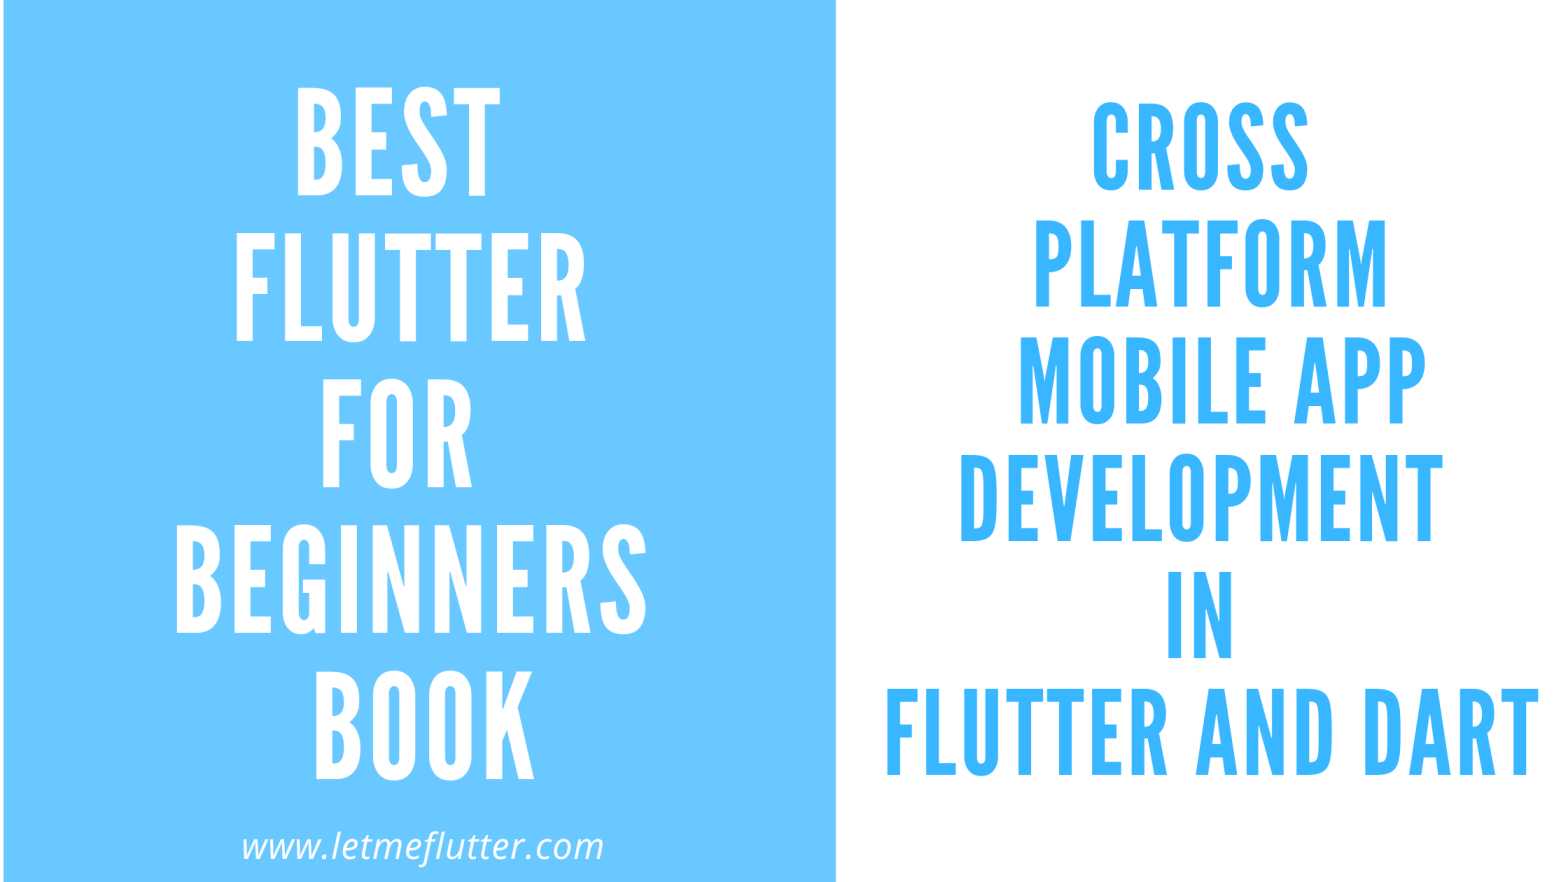 flutter for beginners book